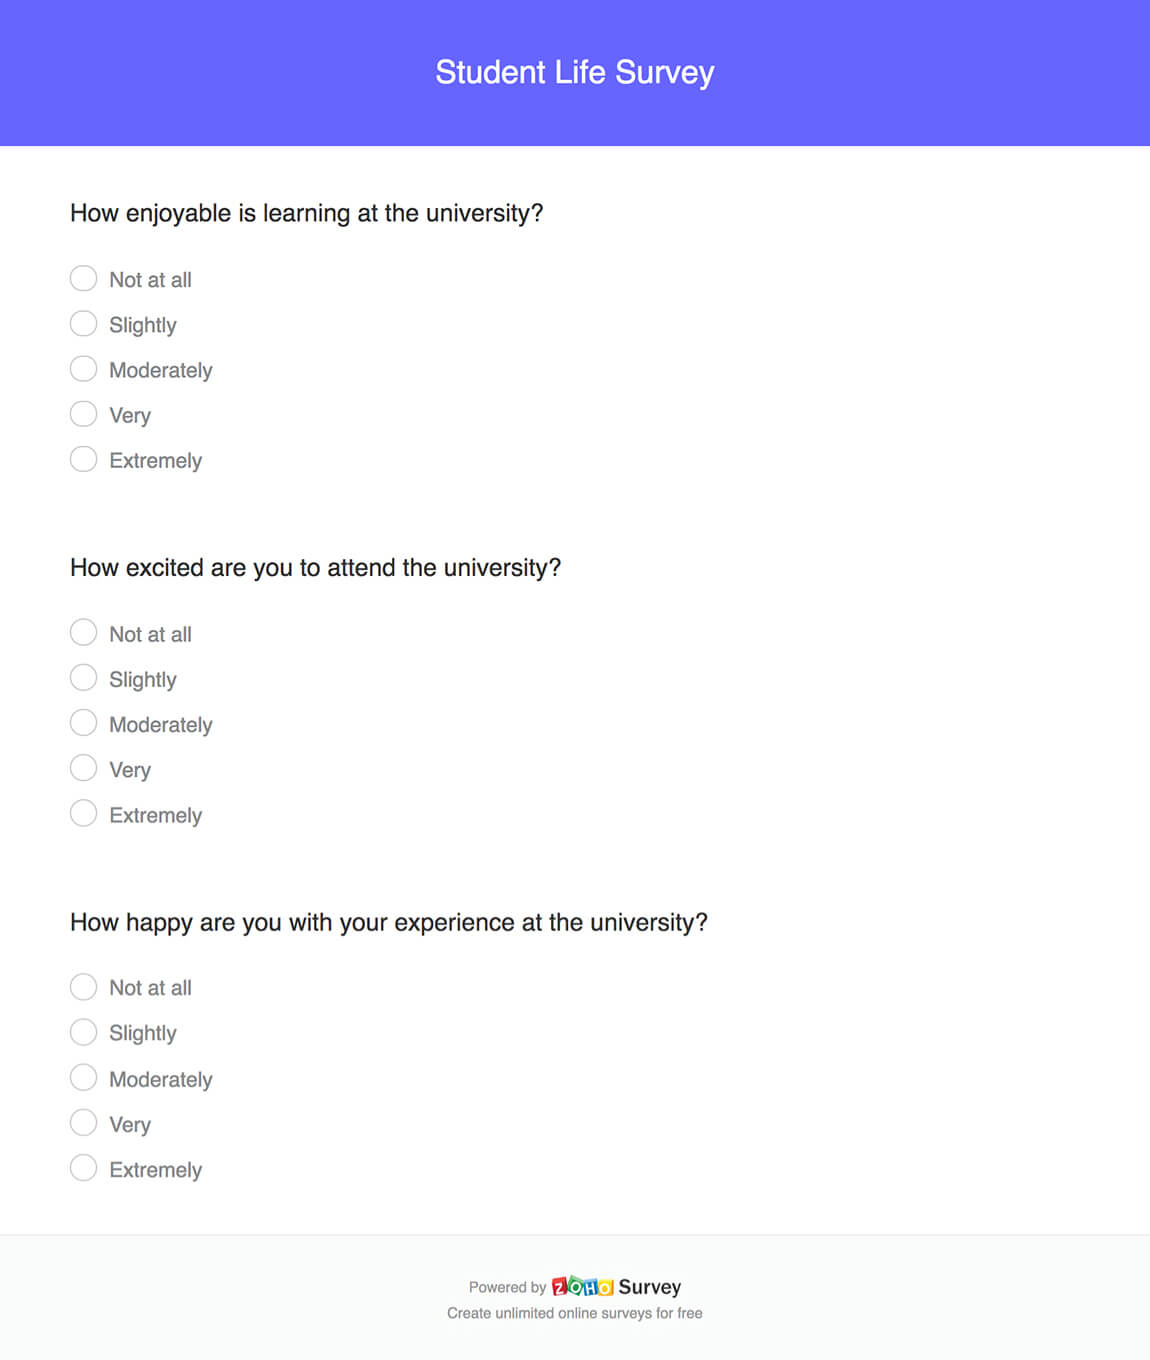 Student life survey questionnaire template